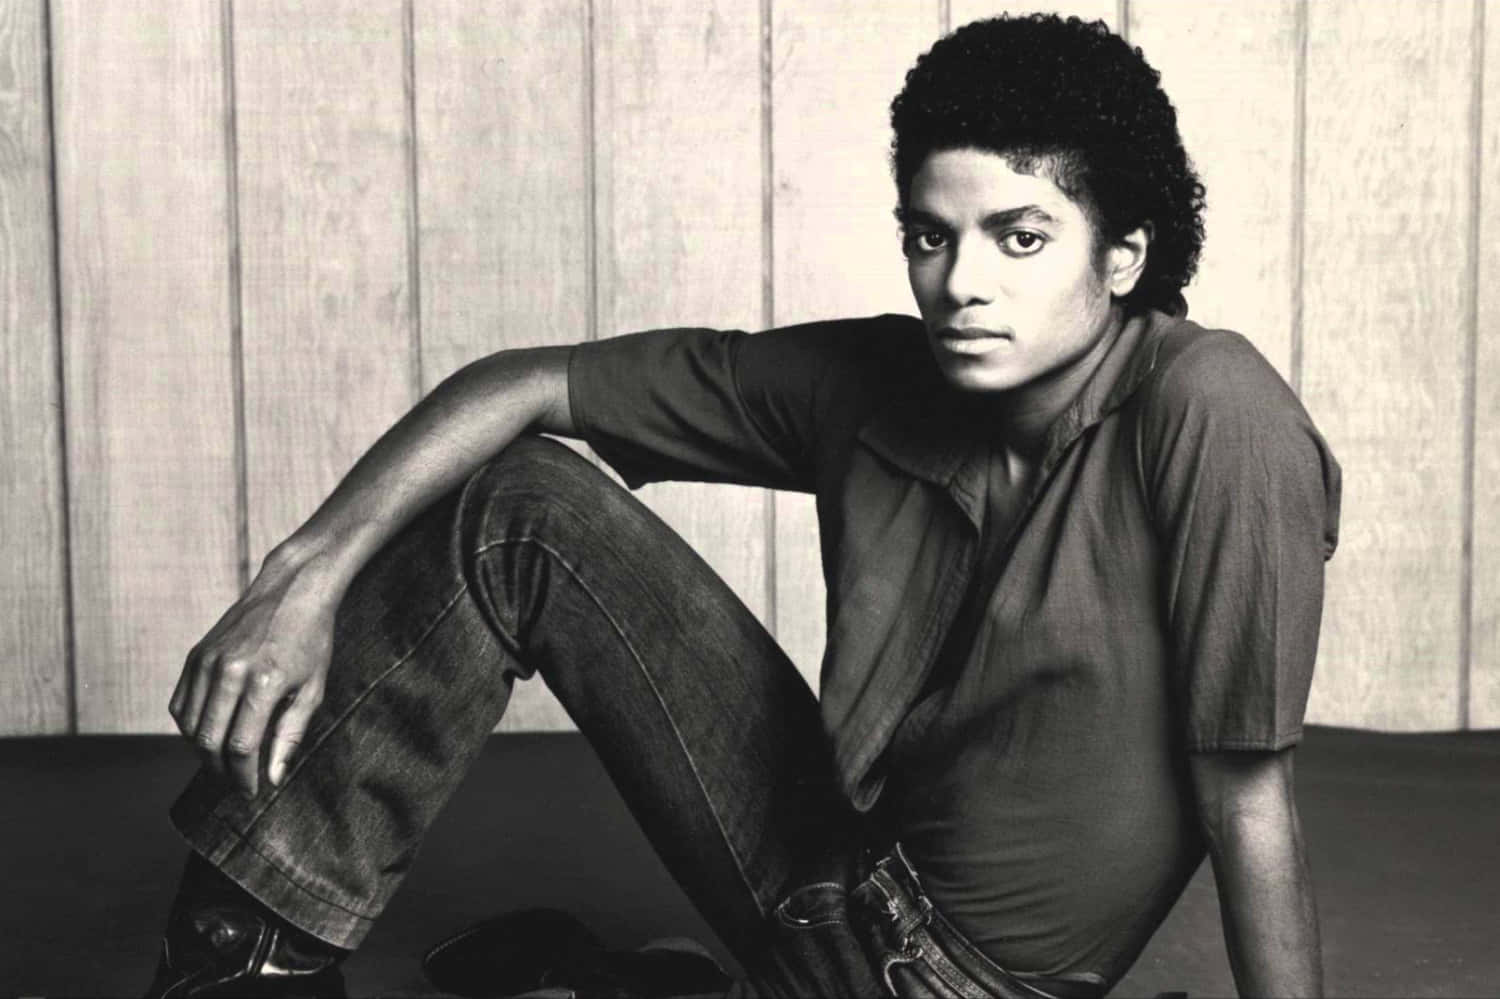 Billeder af Michael Jackson kan blinkende på din skærm.